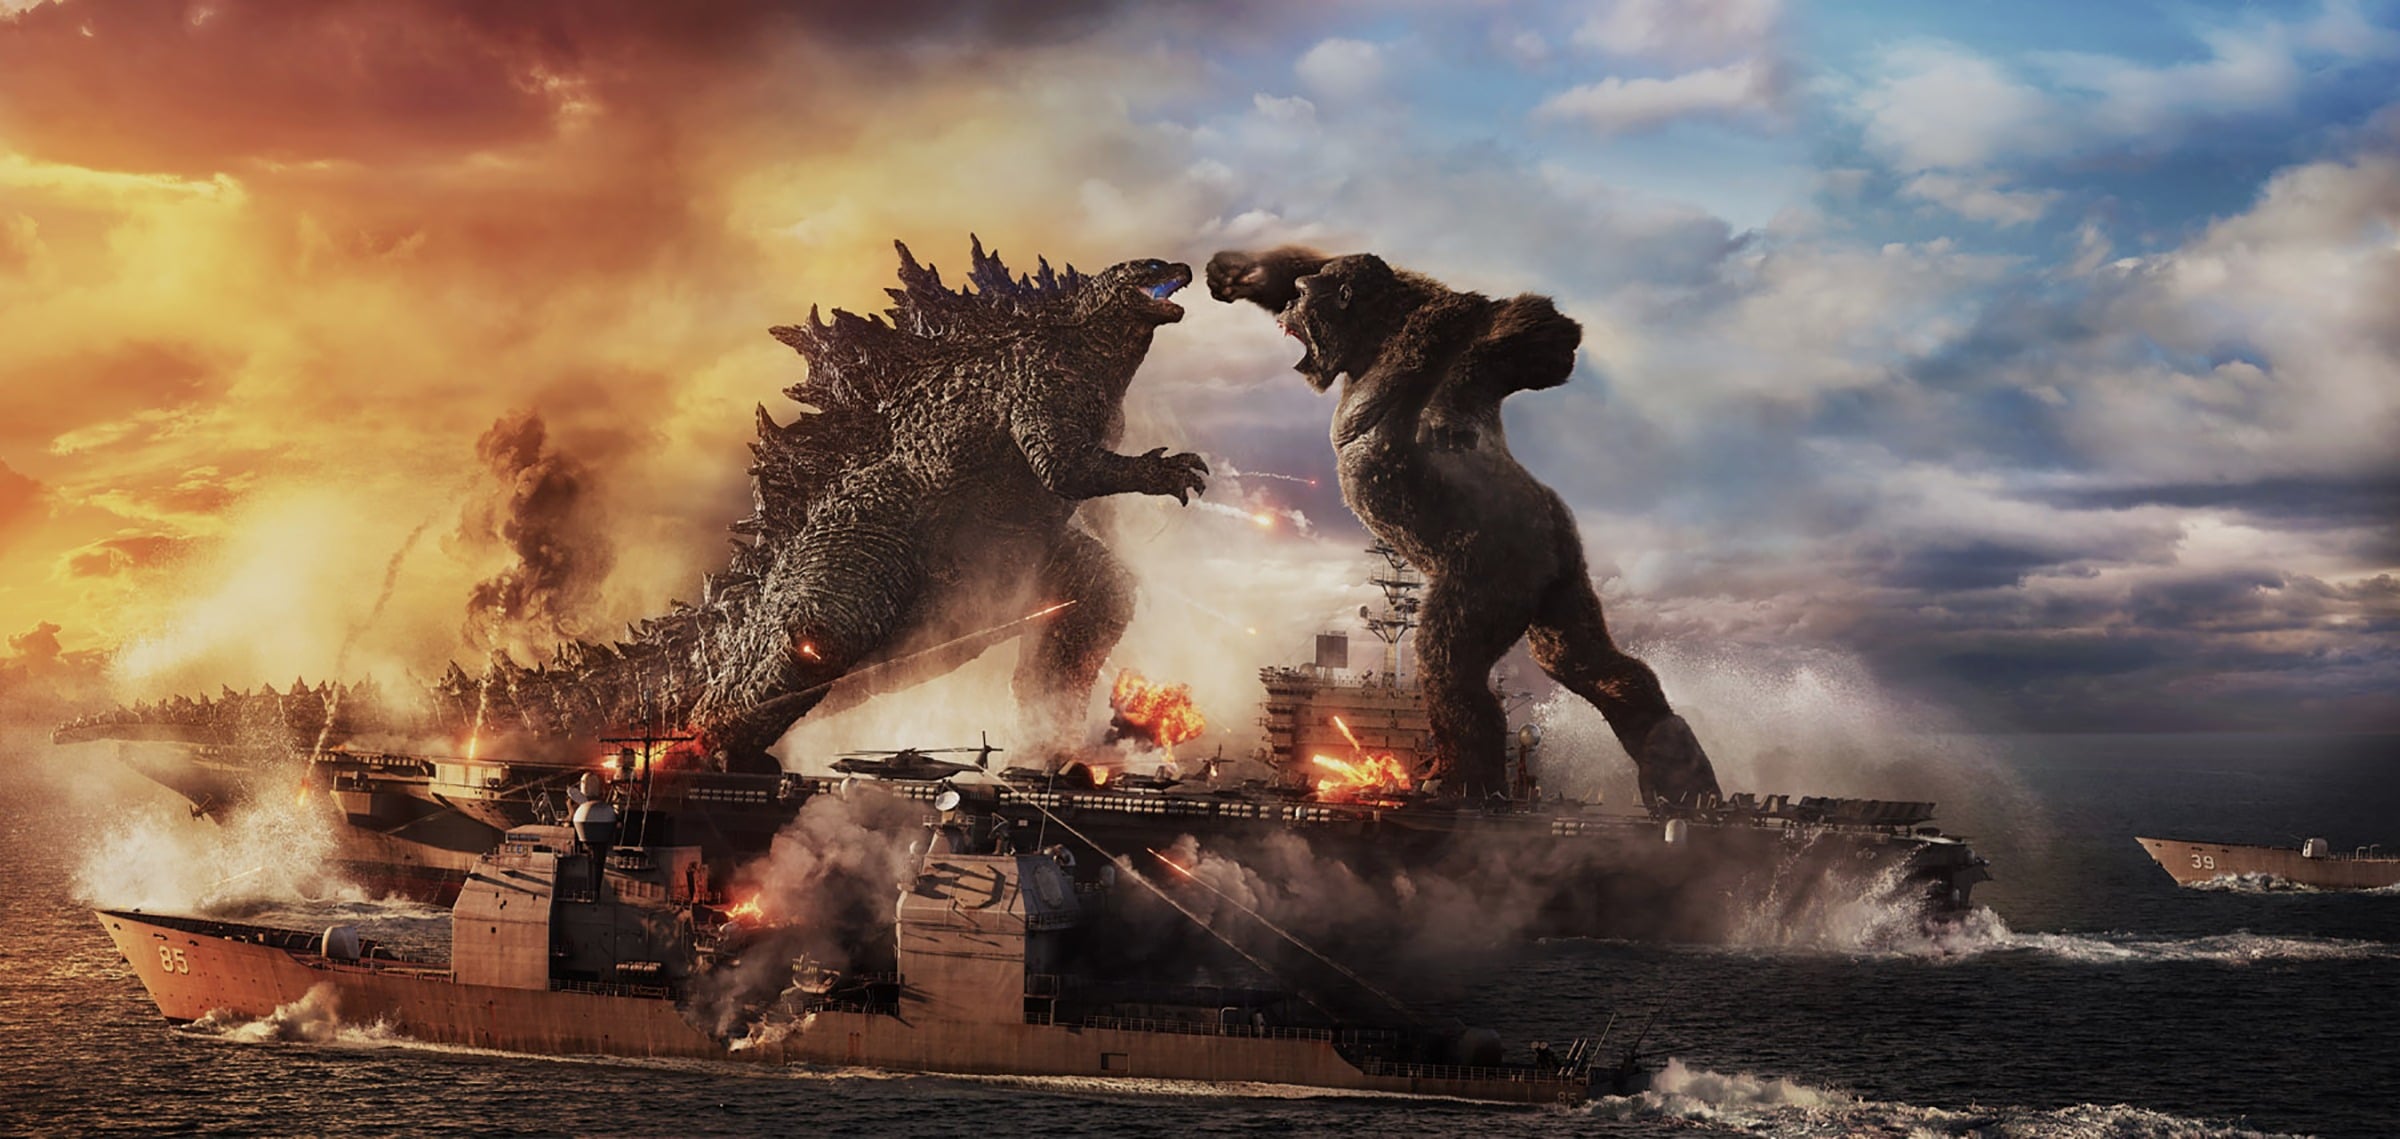 Trailer chính thức Godzilla vs. Kong xuất hiện, hứa hẹn cuộc chiến kinh thiên động địa